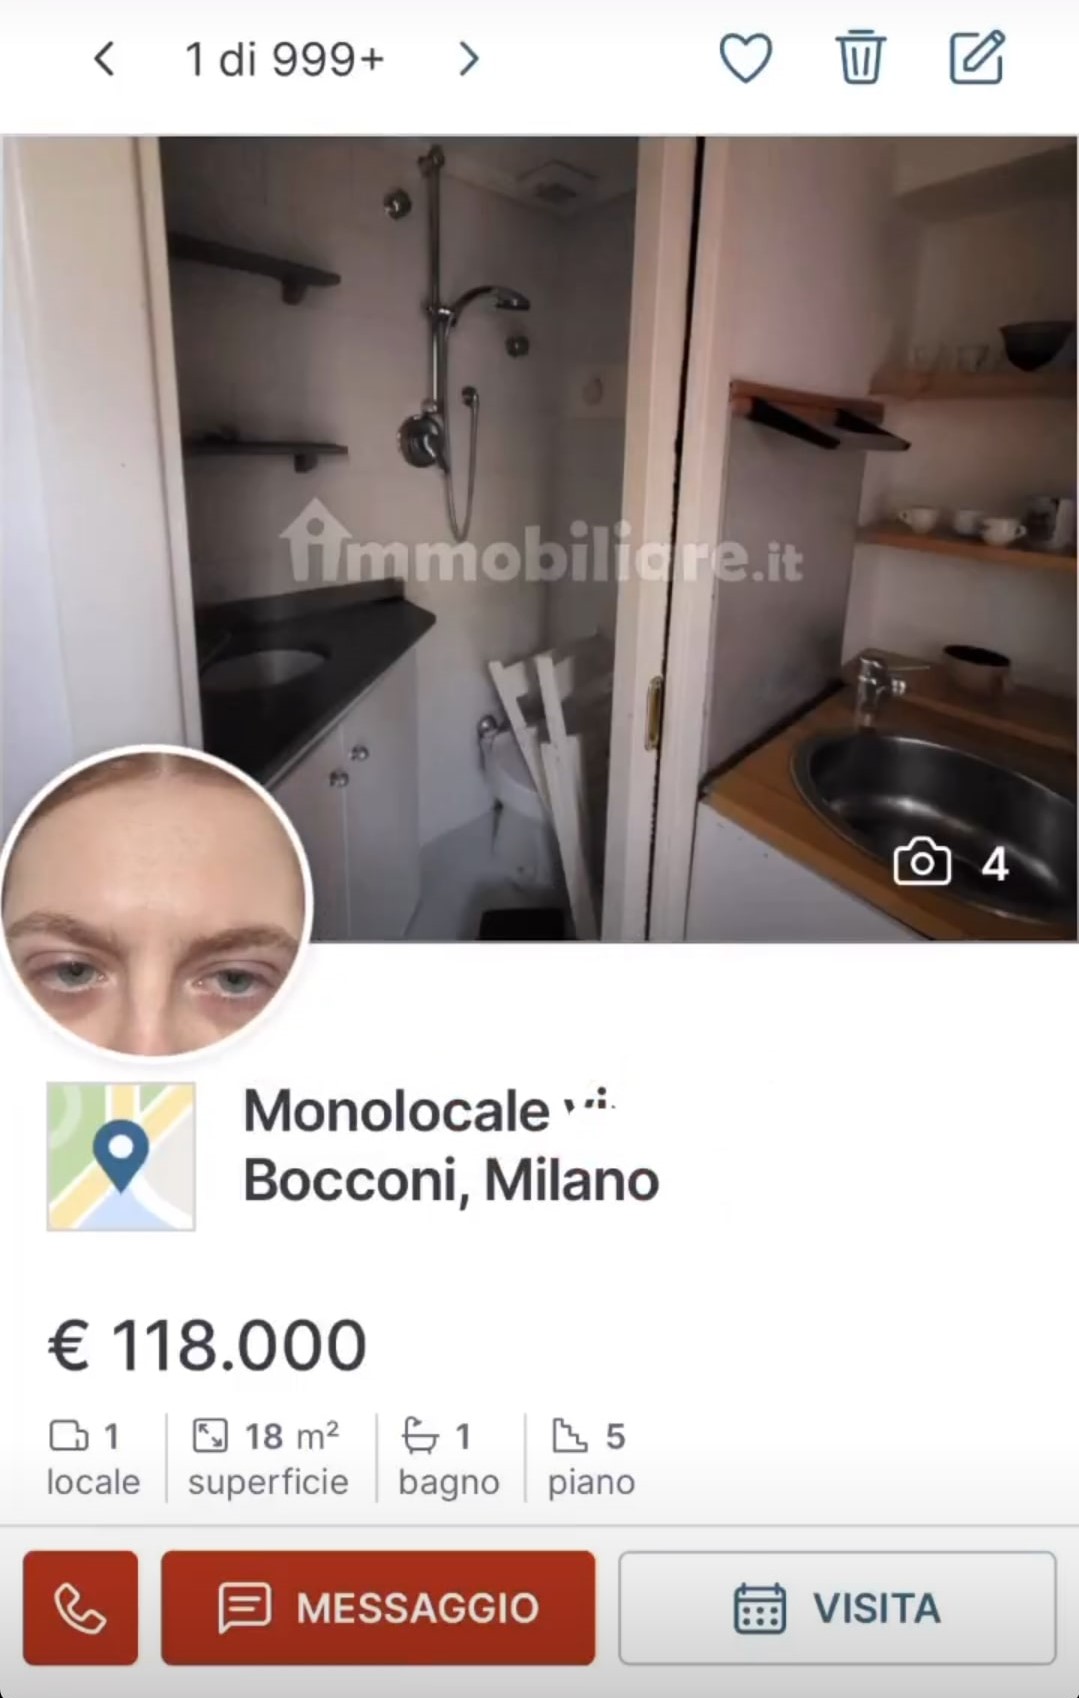 Il monolocale a Milano con la doccia nel ripostiglio della cucina. Fonte: mangiapregasbatty - Instagram